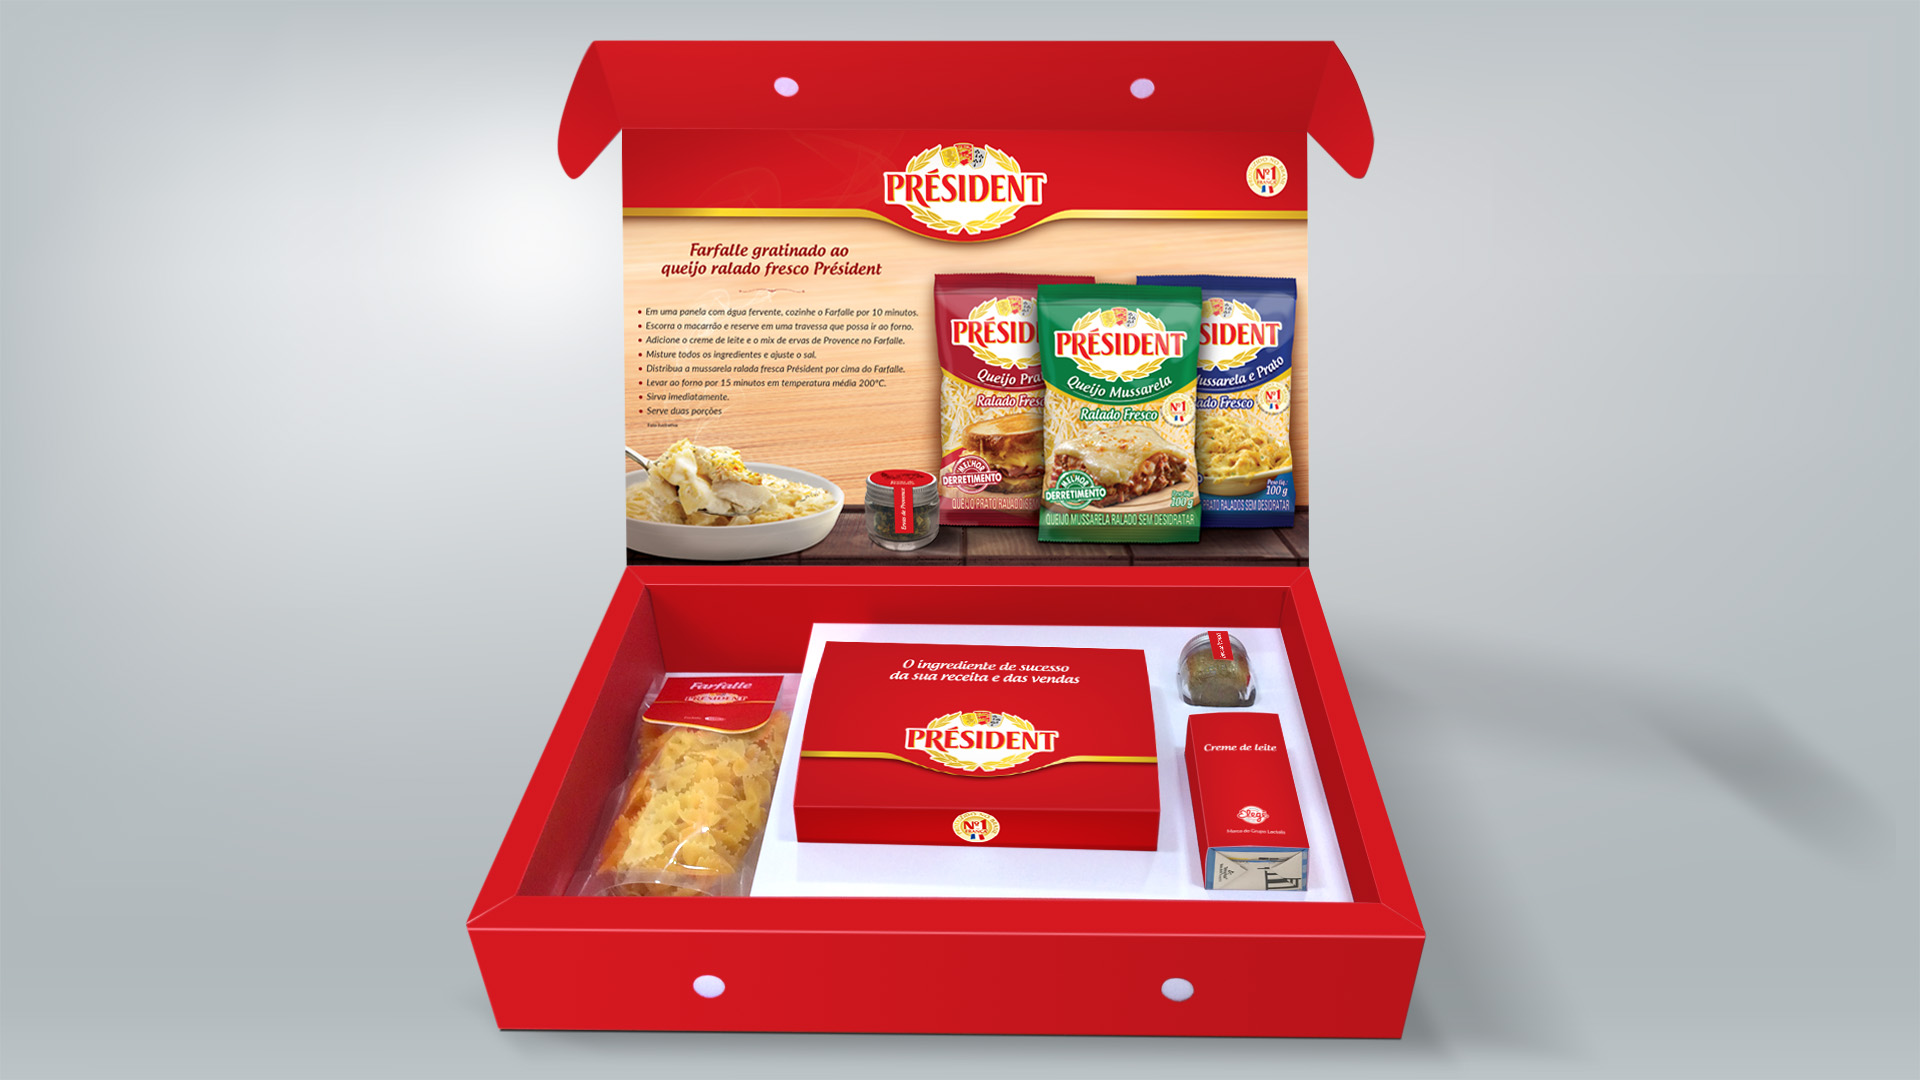 Imagem do sales kit de lançamento de produto Président Lactalis.